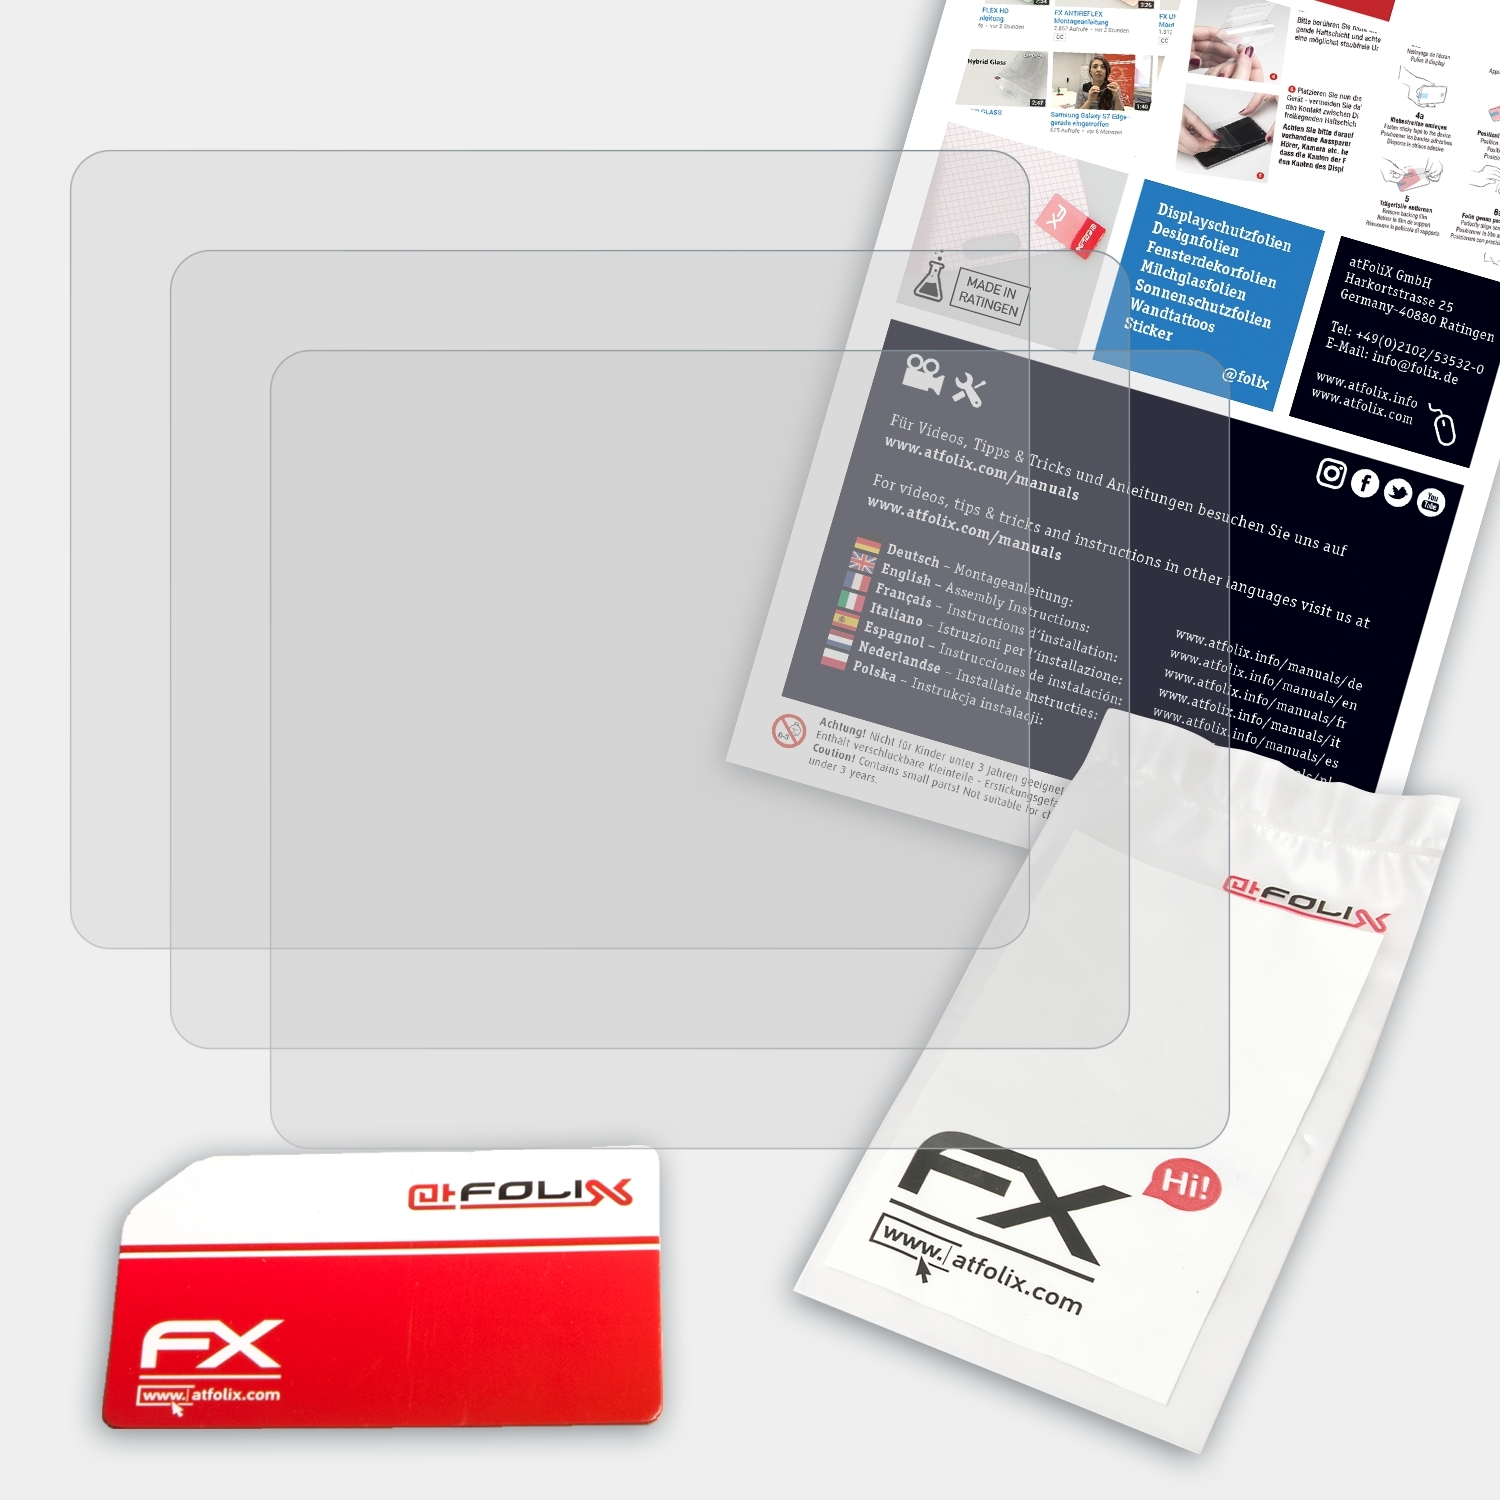 ATFOLIX 3x FDR-X3000R) Displayschutz(für FX-Antireflex Sony